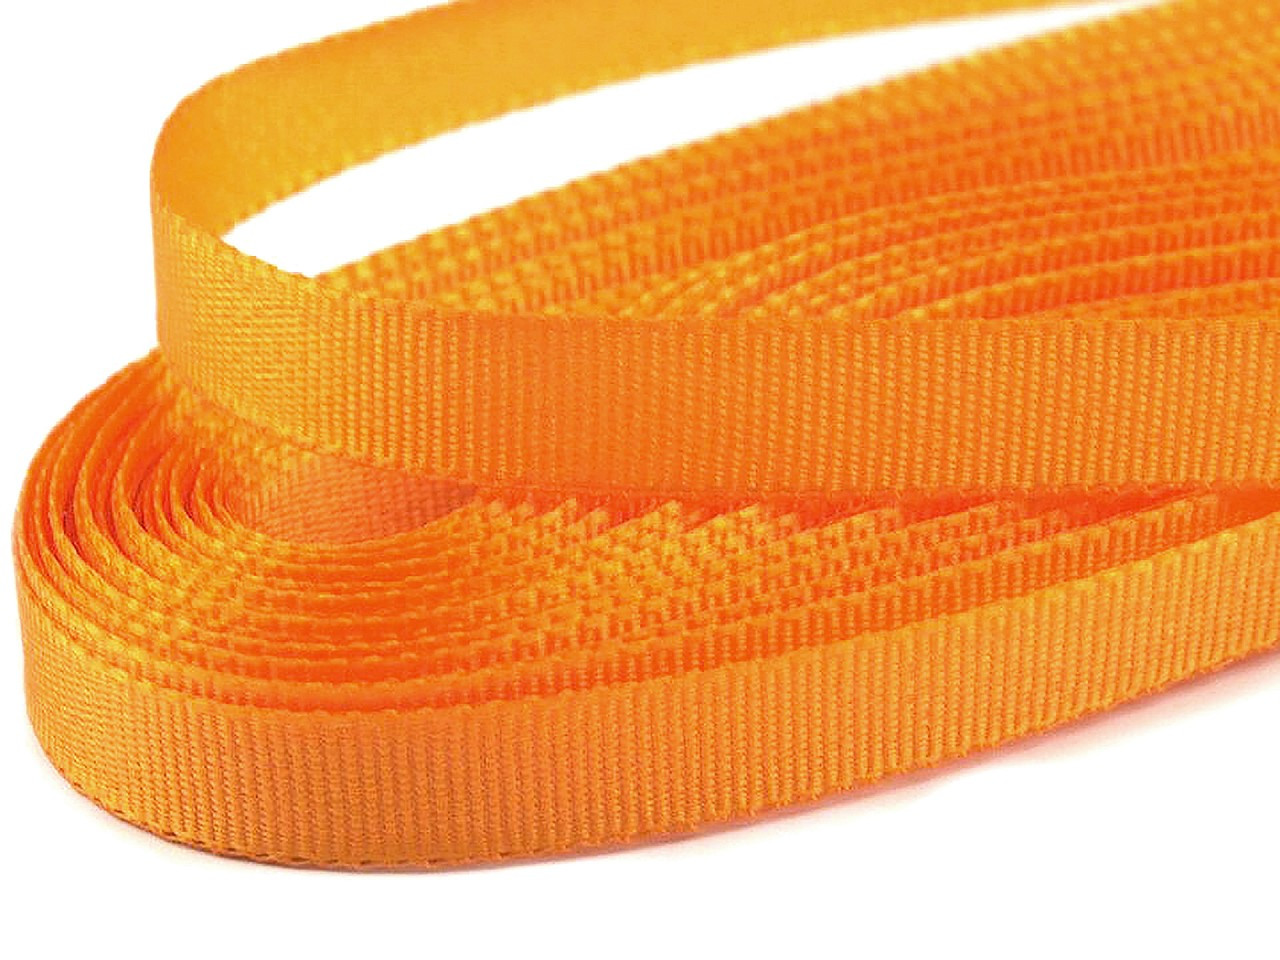 Stuha taftová šíře 6 mm, barva 211 oranžová sytá sv